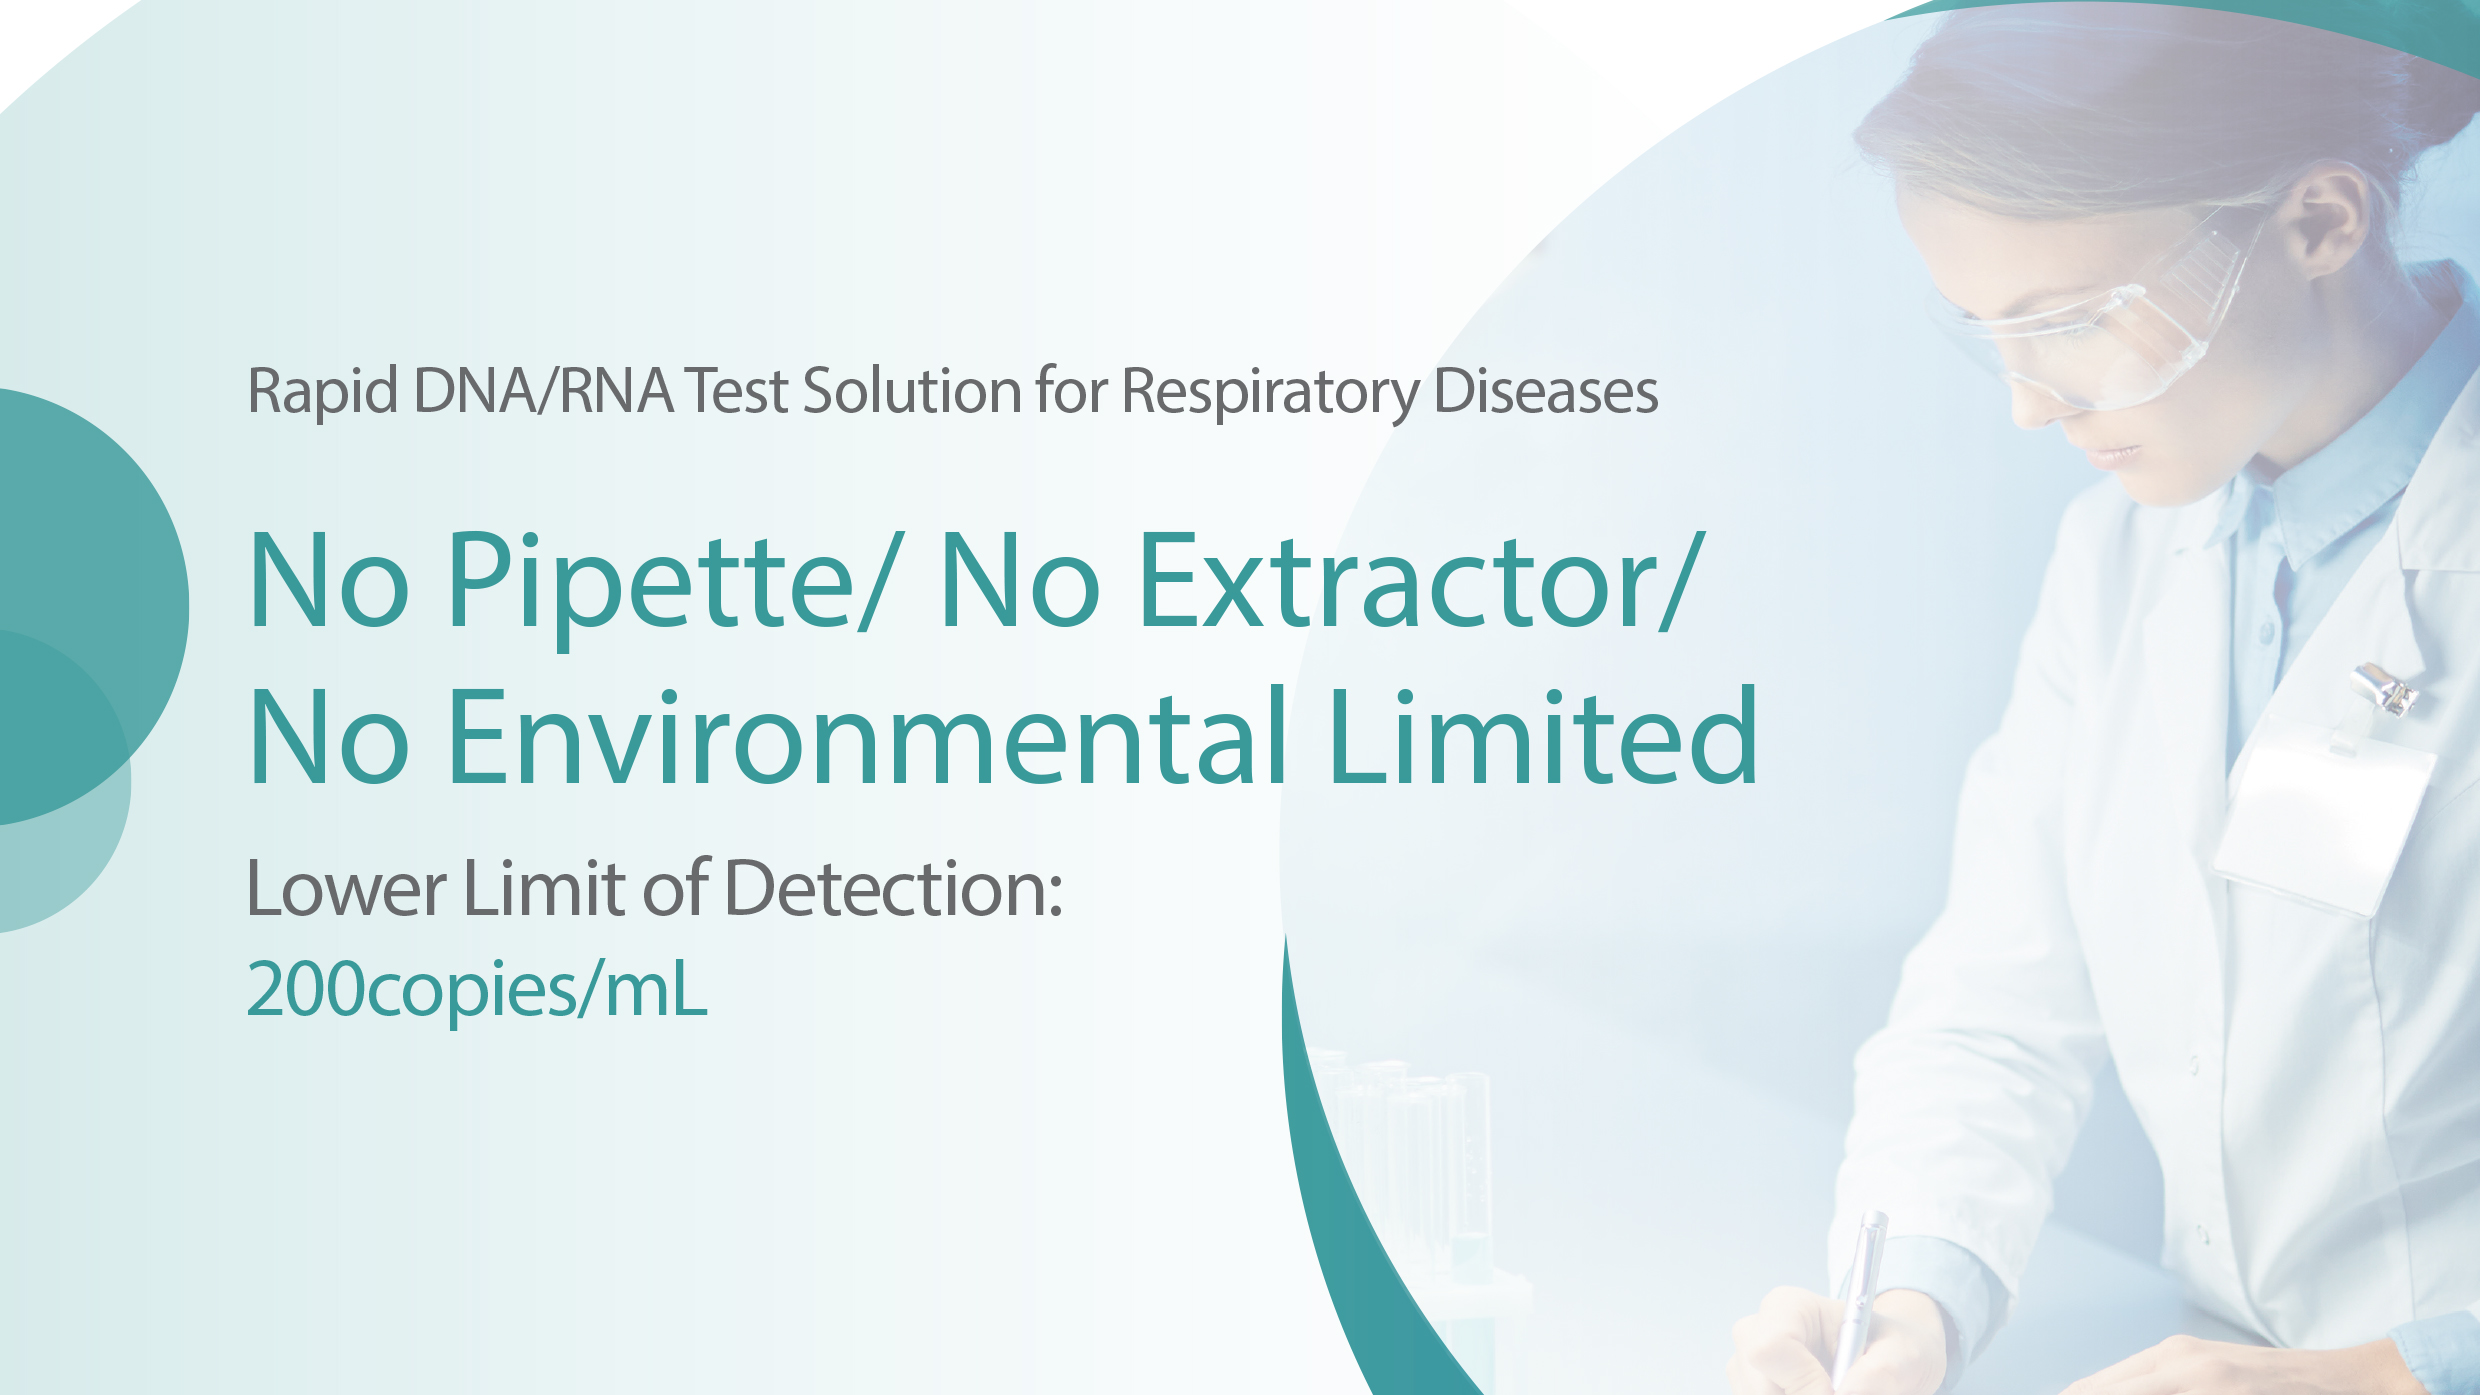 Solução rápida de teste de DNA/RNA para doenças respiratórias